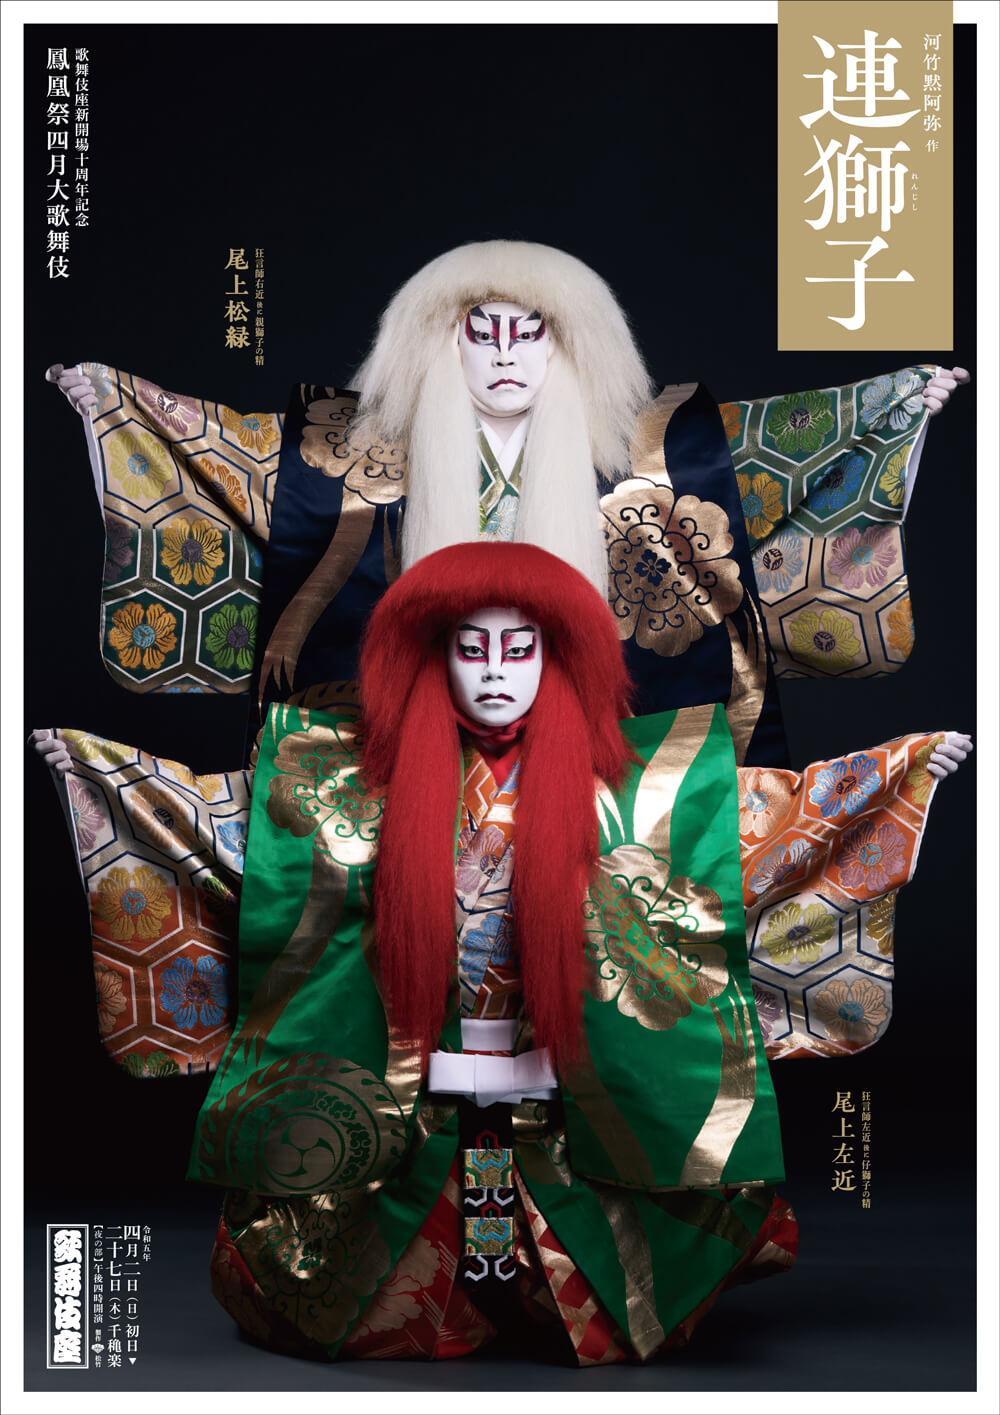 歌舞伎座「鳳凰祭四月大歌舞伎」特別ポスター公開